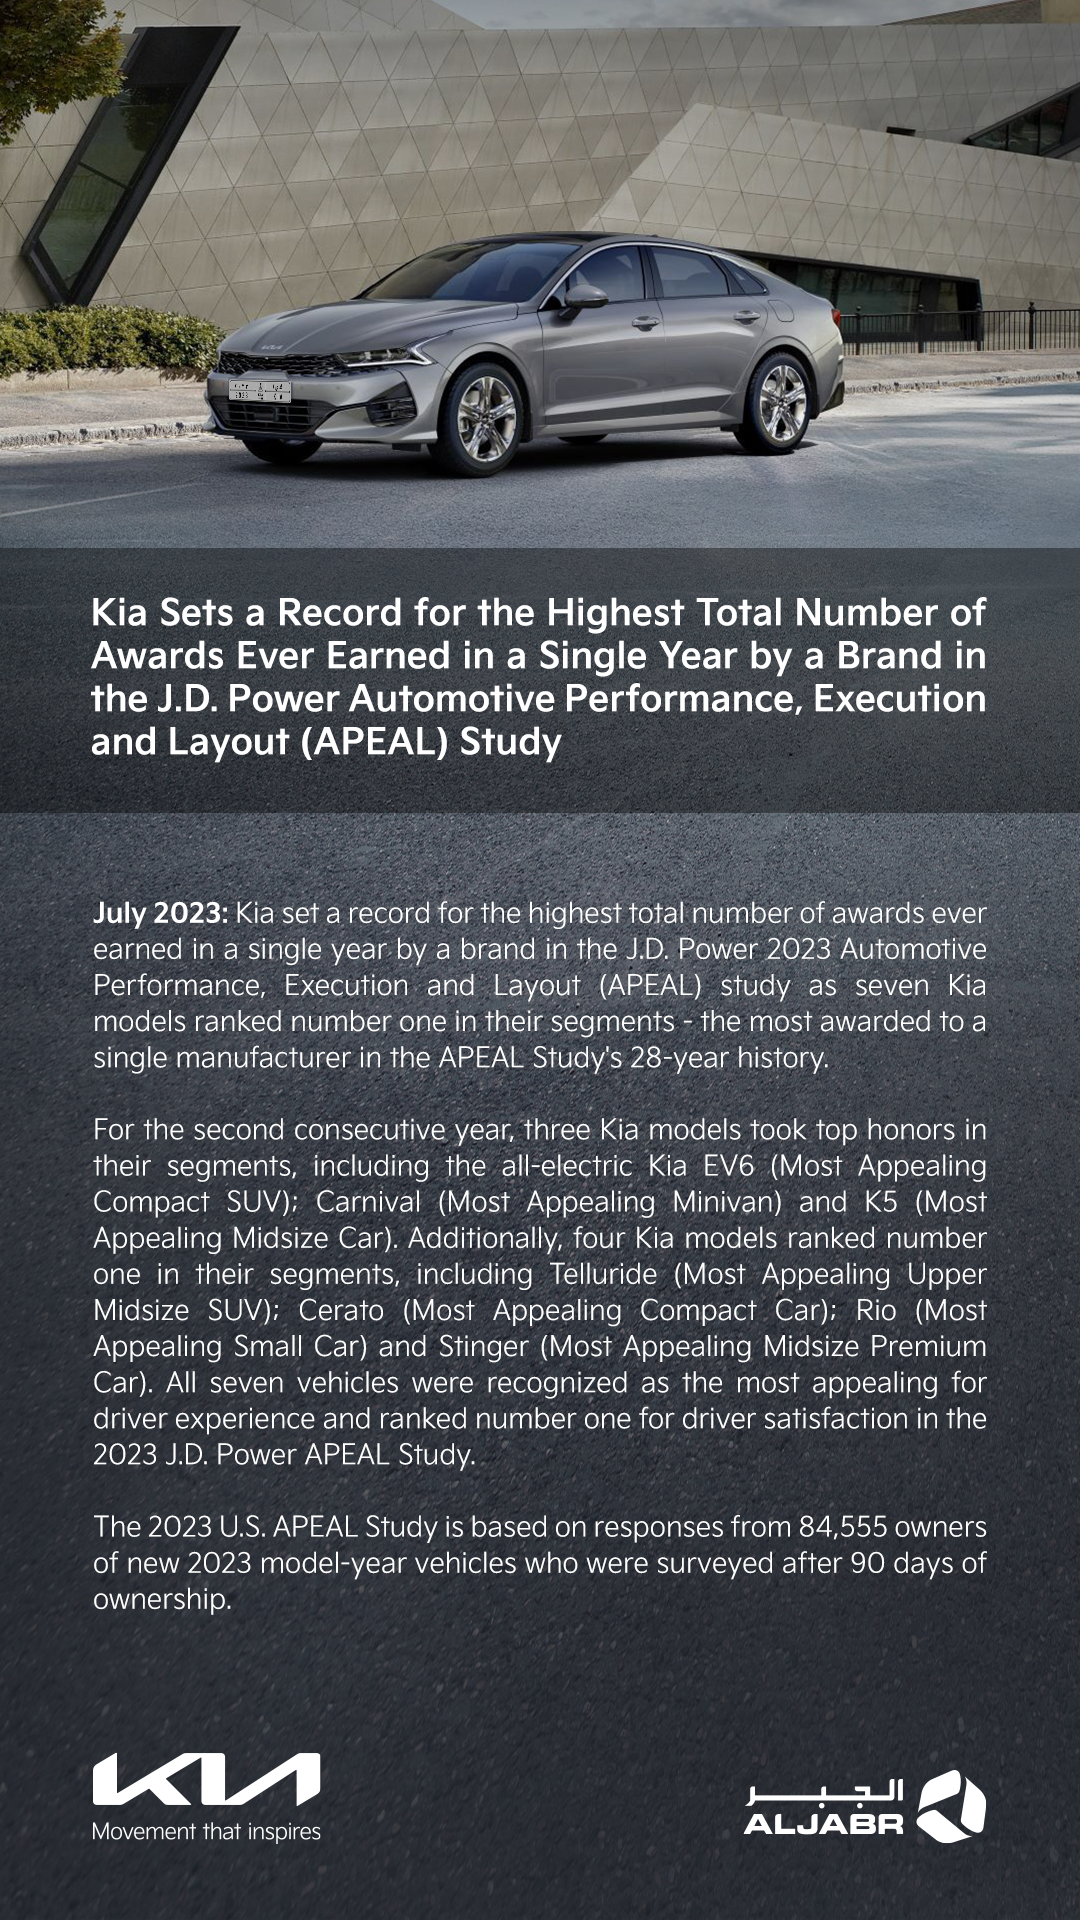 "كيا" تحقق رقمًا قياسيًا في أعلى إجمالي جيه دي باور (J.D. Power) وذلك في مجال أداء وتنفيذ وتصميم السيارات 2